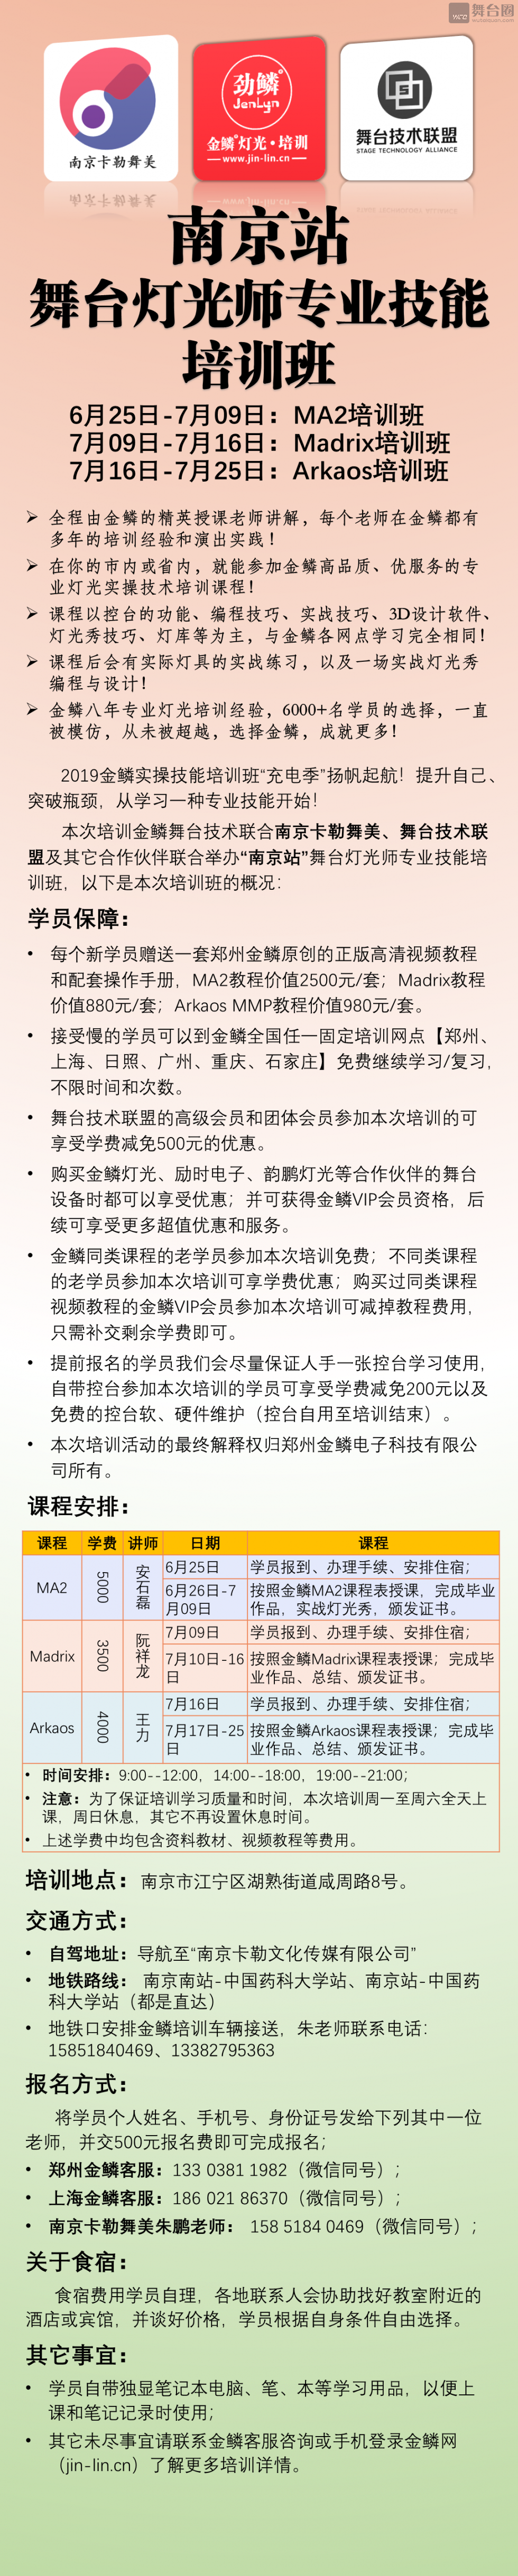 6月25日-7月25日“南京站”舞台灯光师专业技能培训班